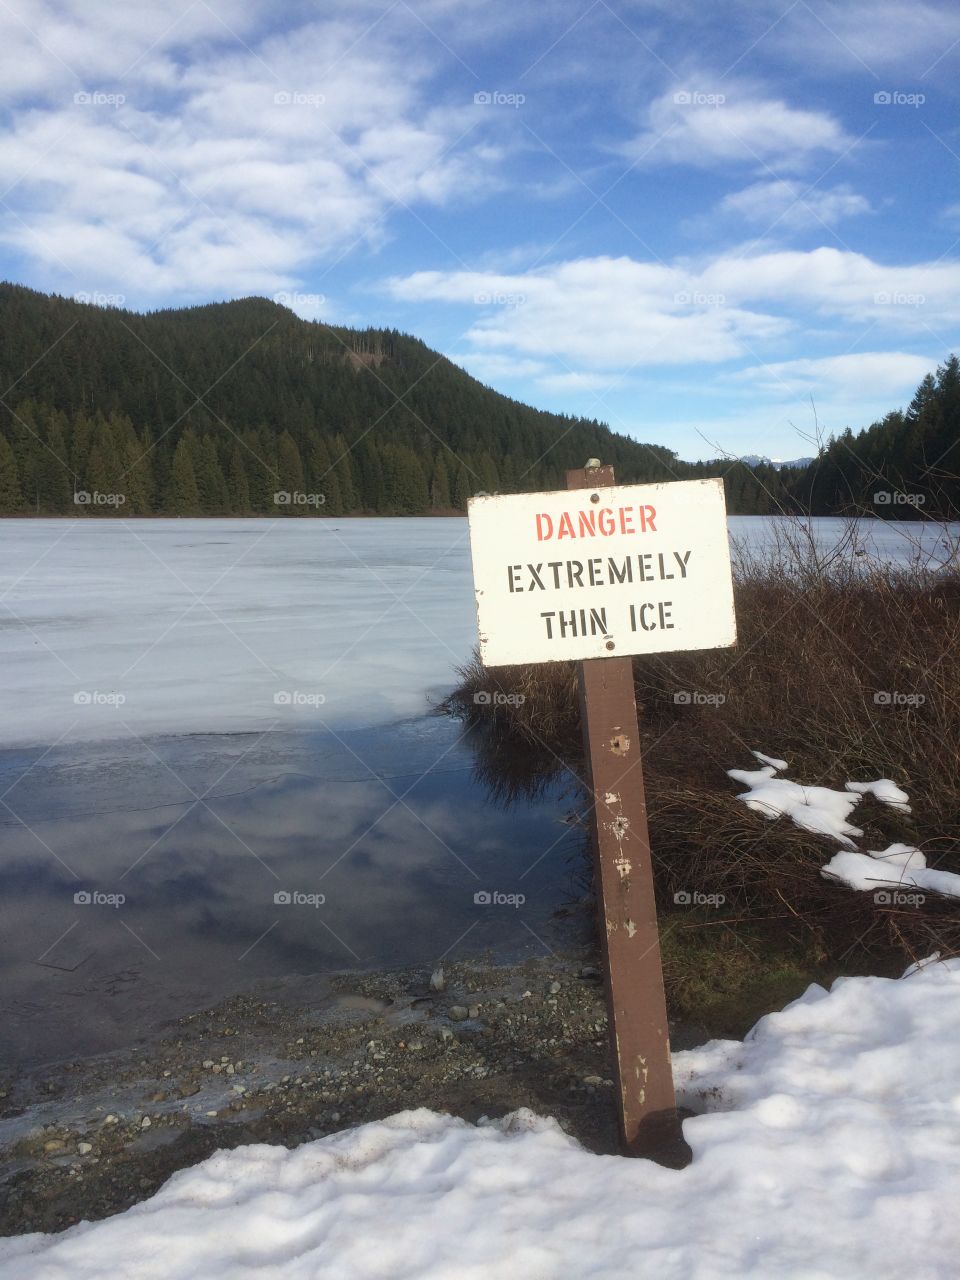 Don't walking ice